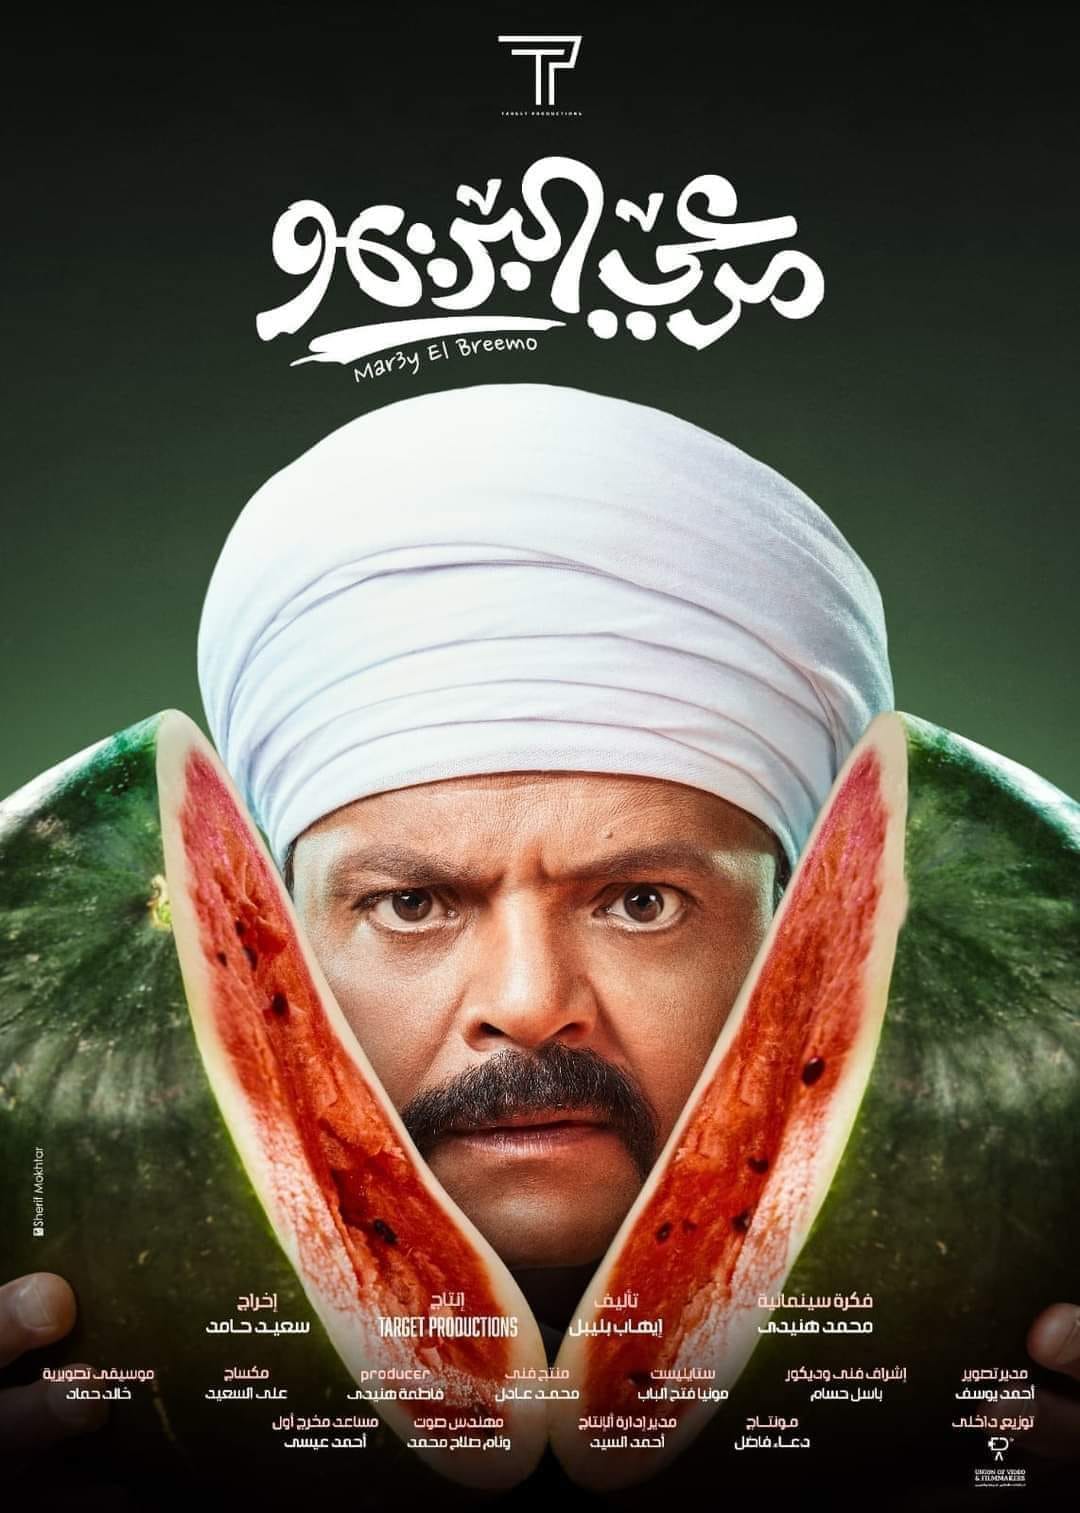 محمد هنيدي فيلم مرعي البريمو